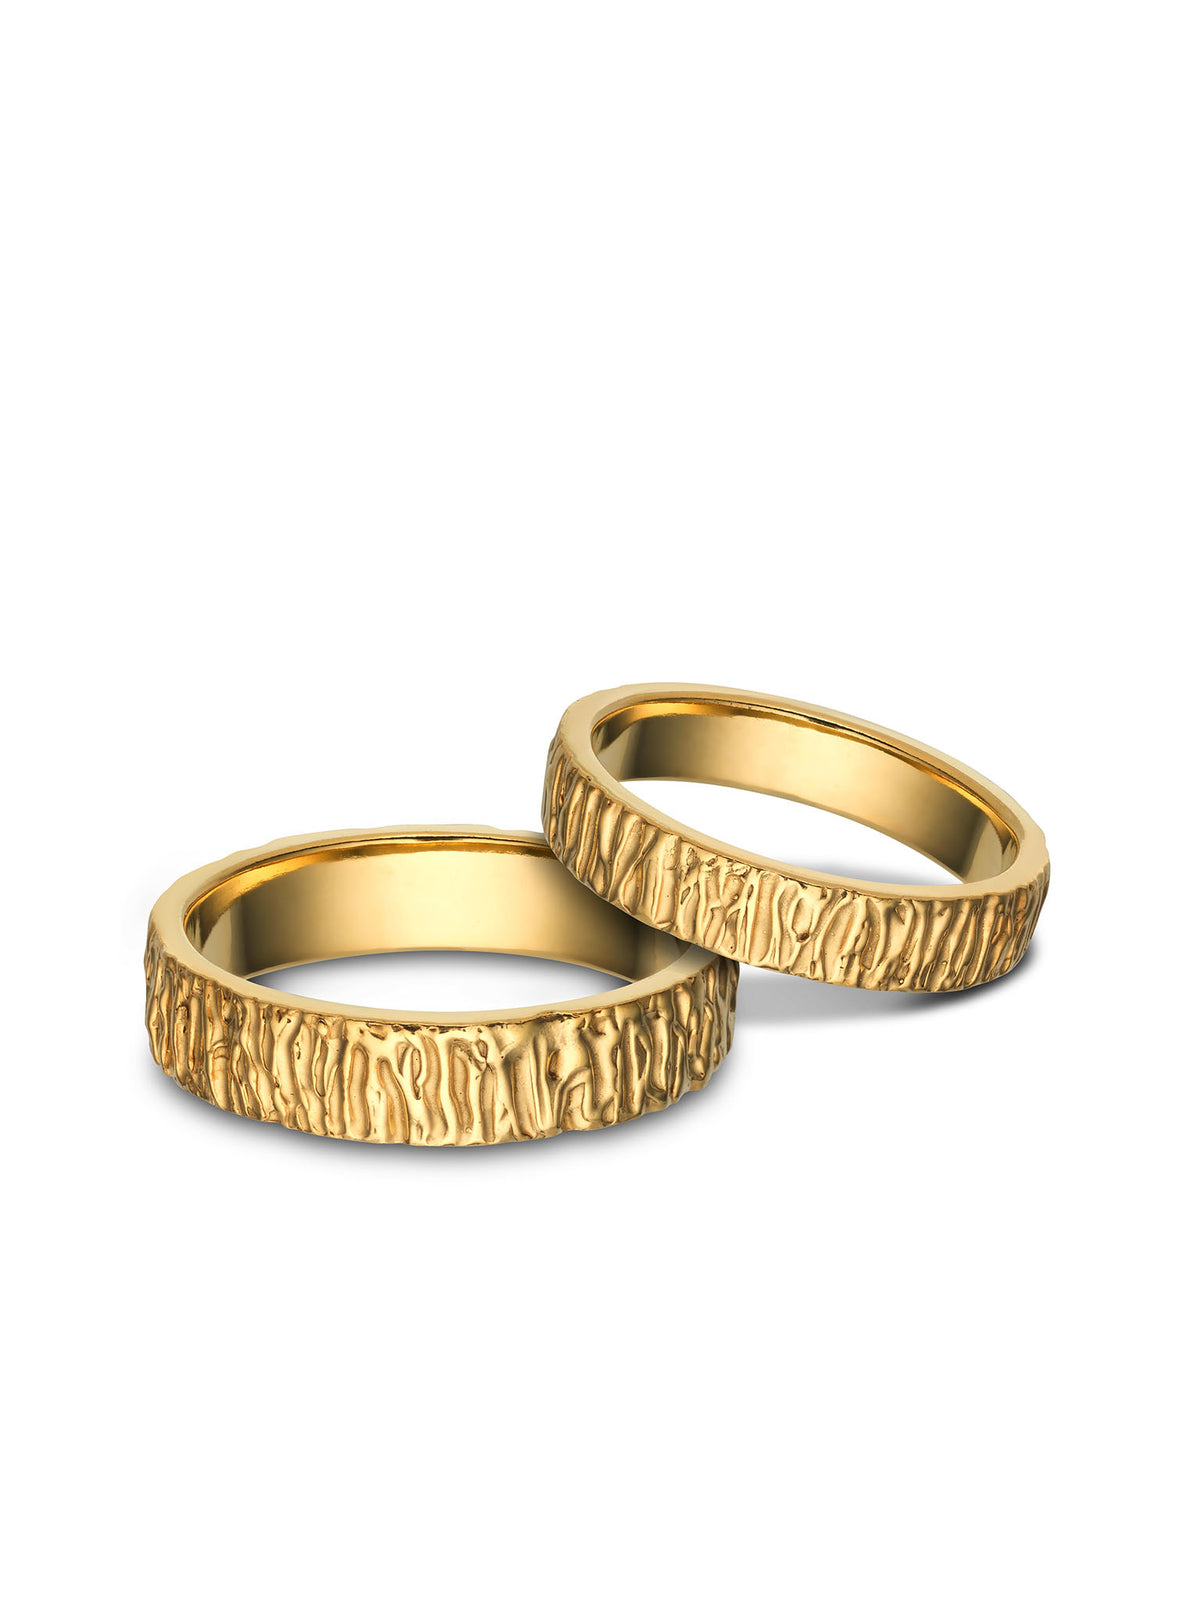 Forest Jegygyűrű / Arany 